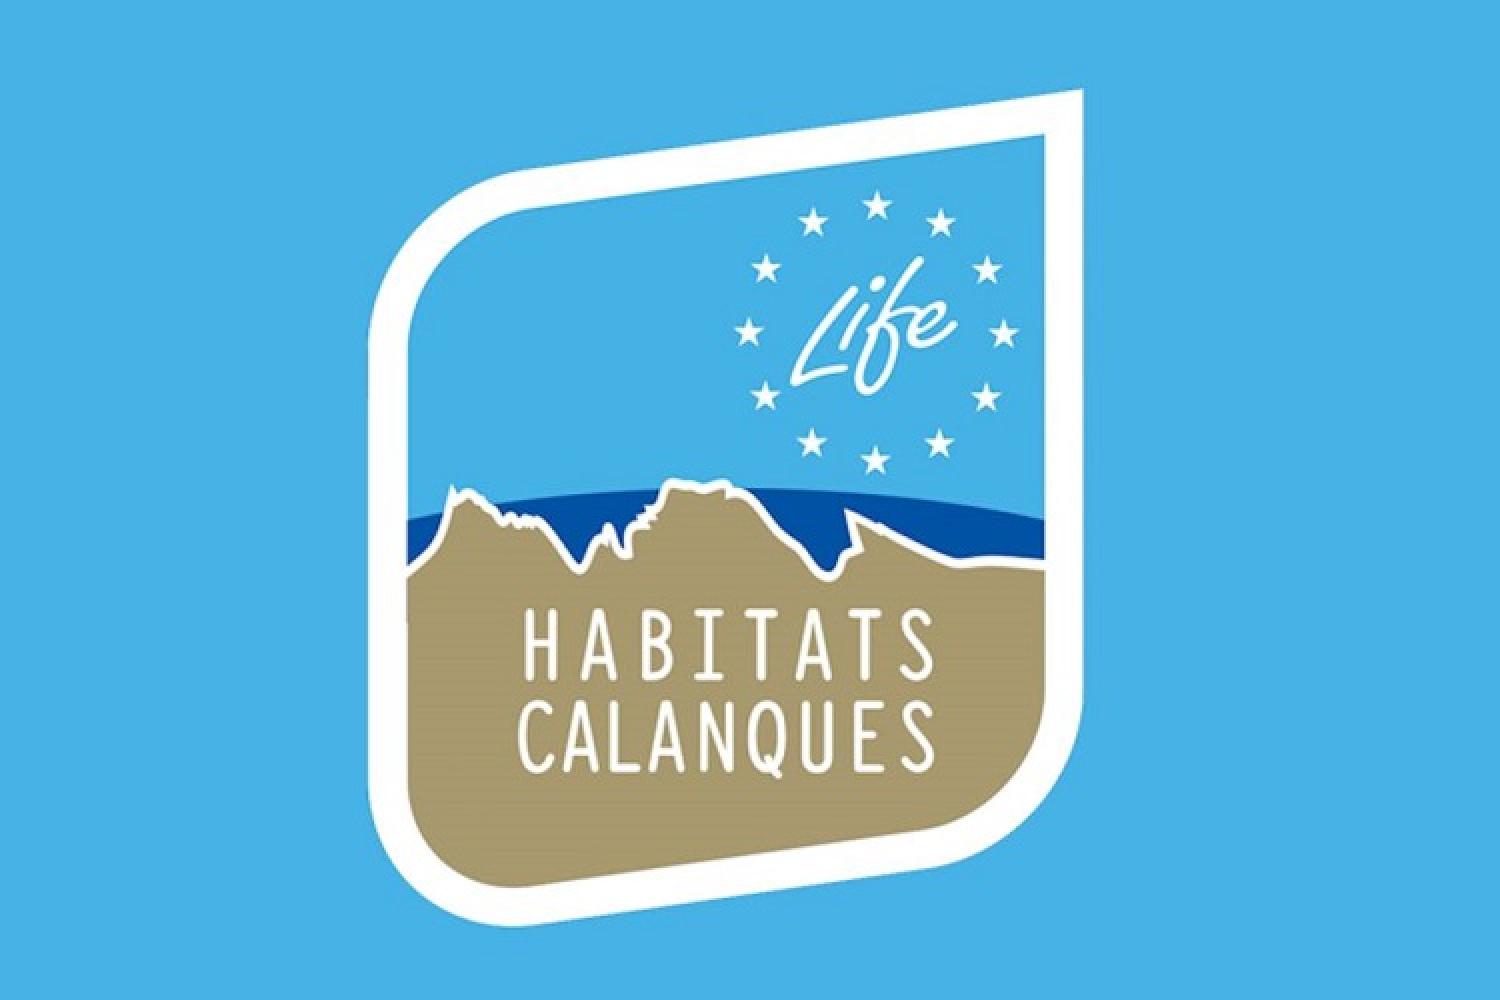 1-life-habitats-calanques.jpg